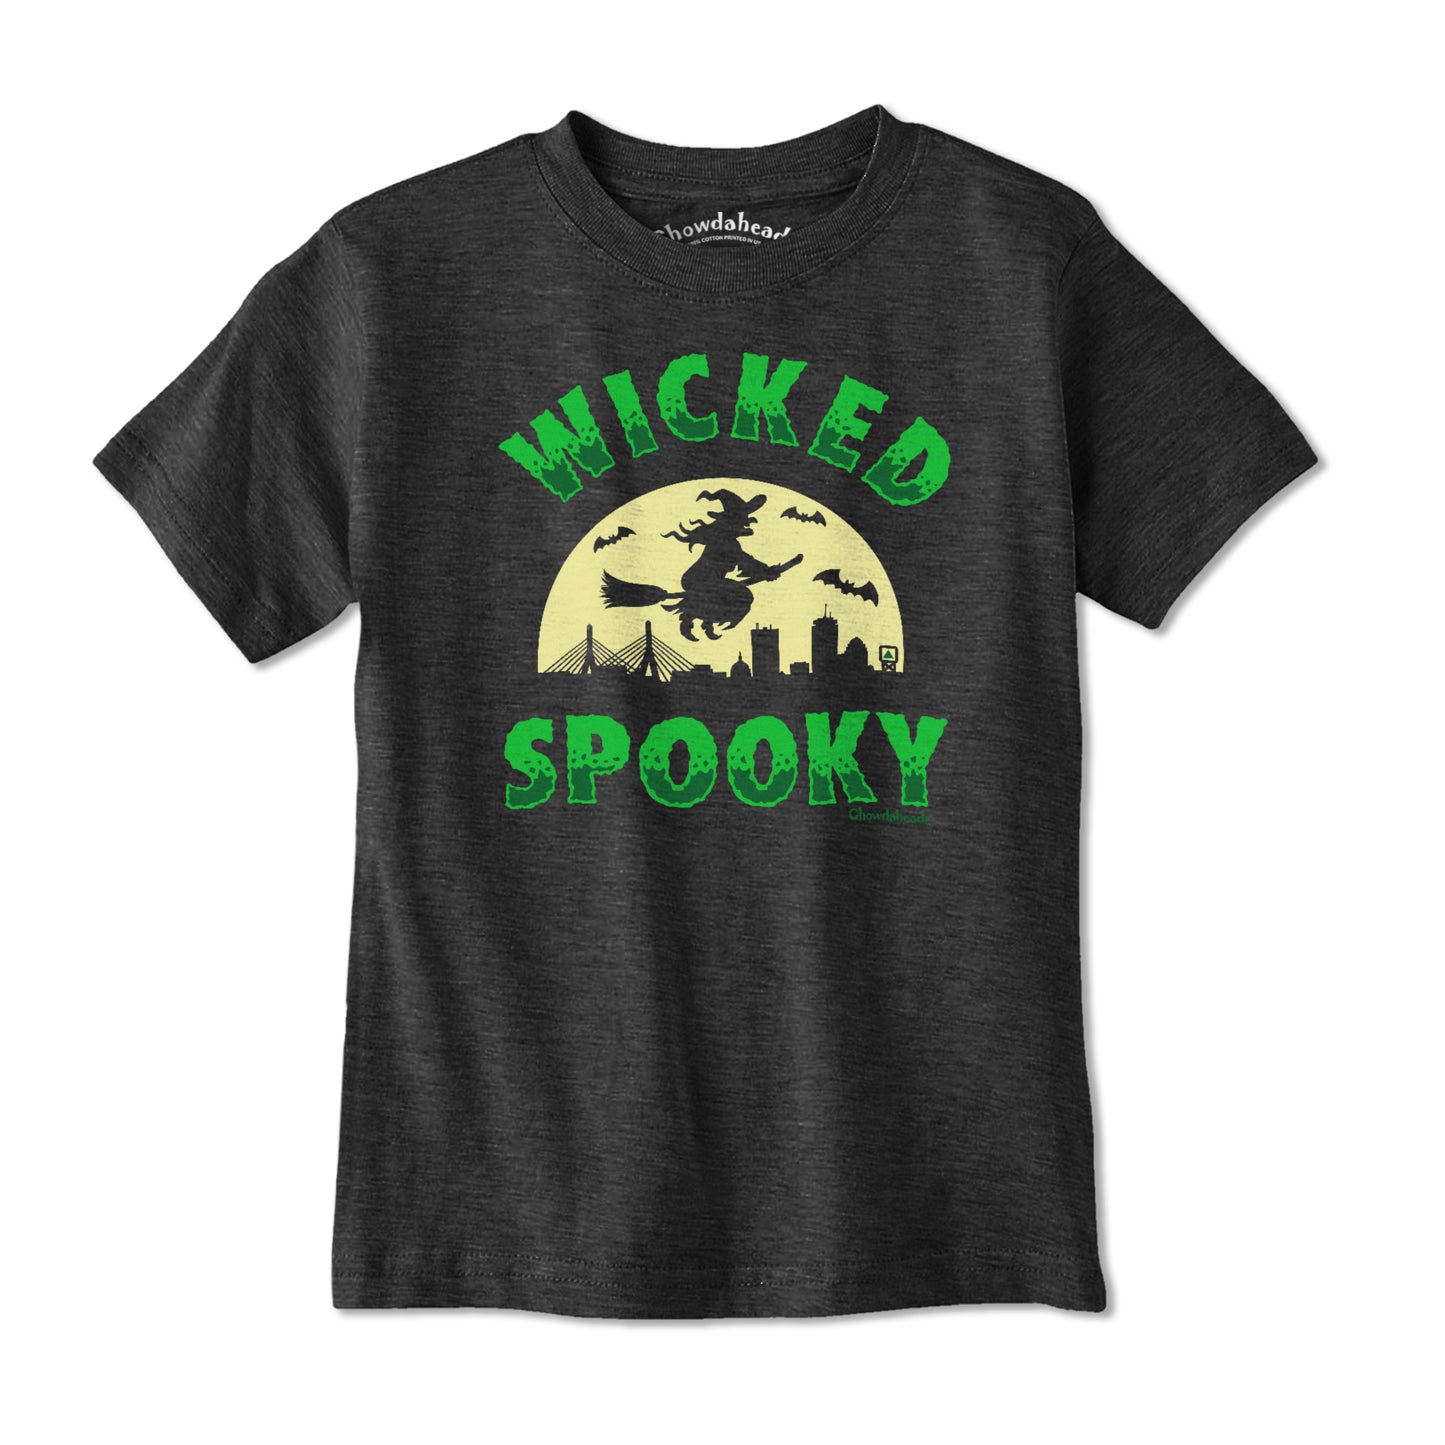 Wicked Spooky Witch Youth T-Shirt - Chowdaheadz